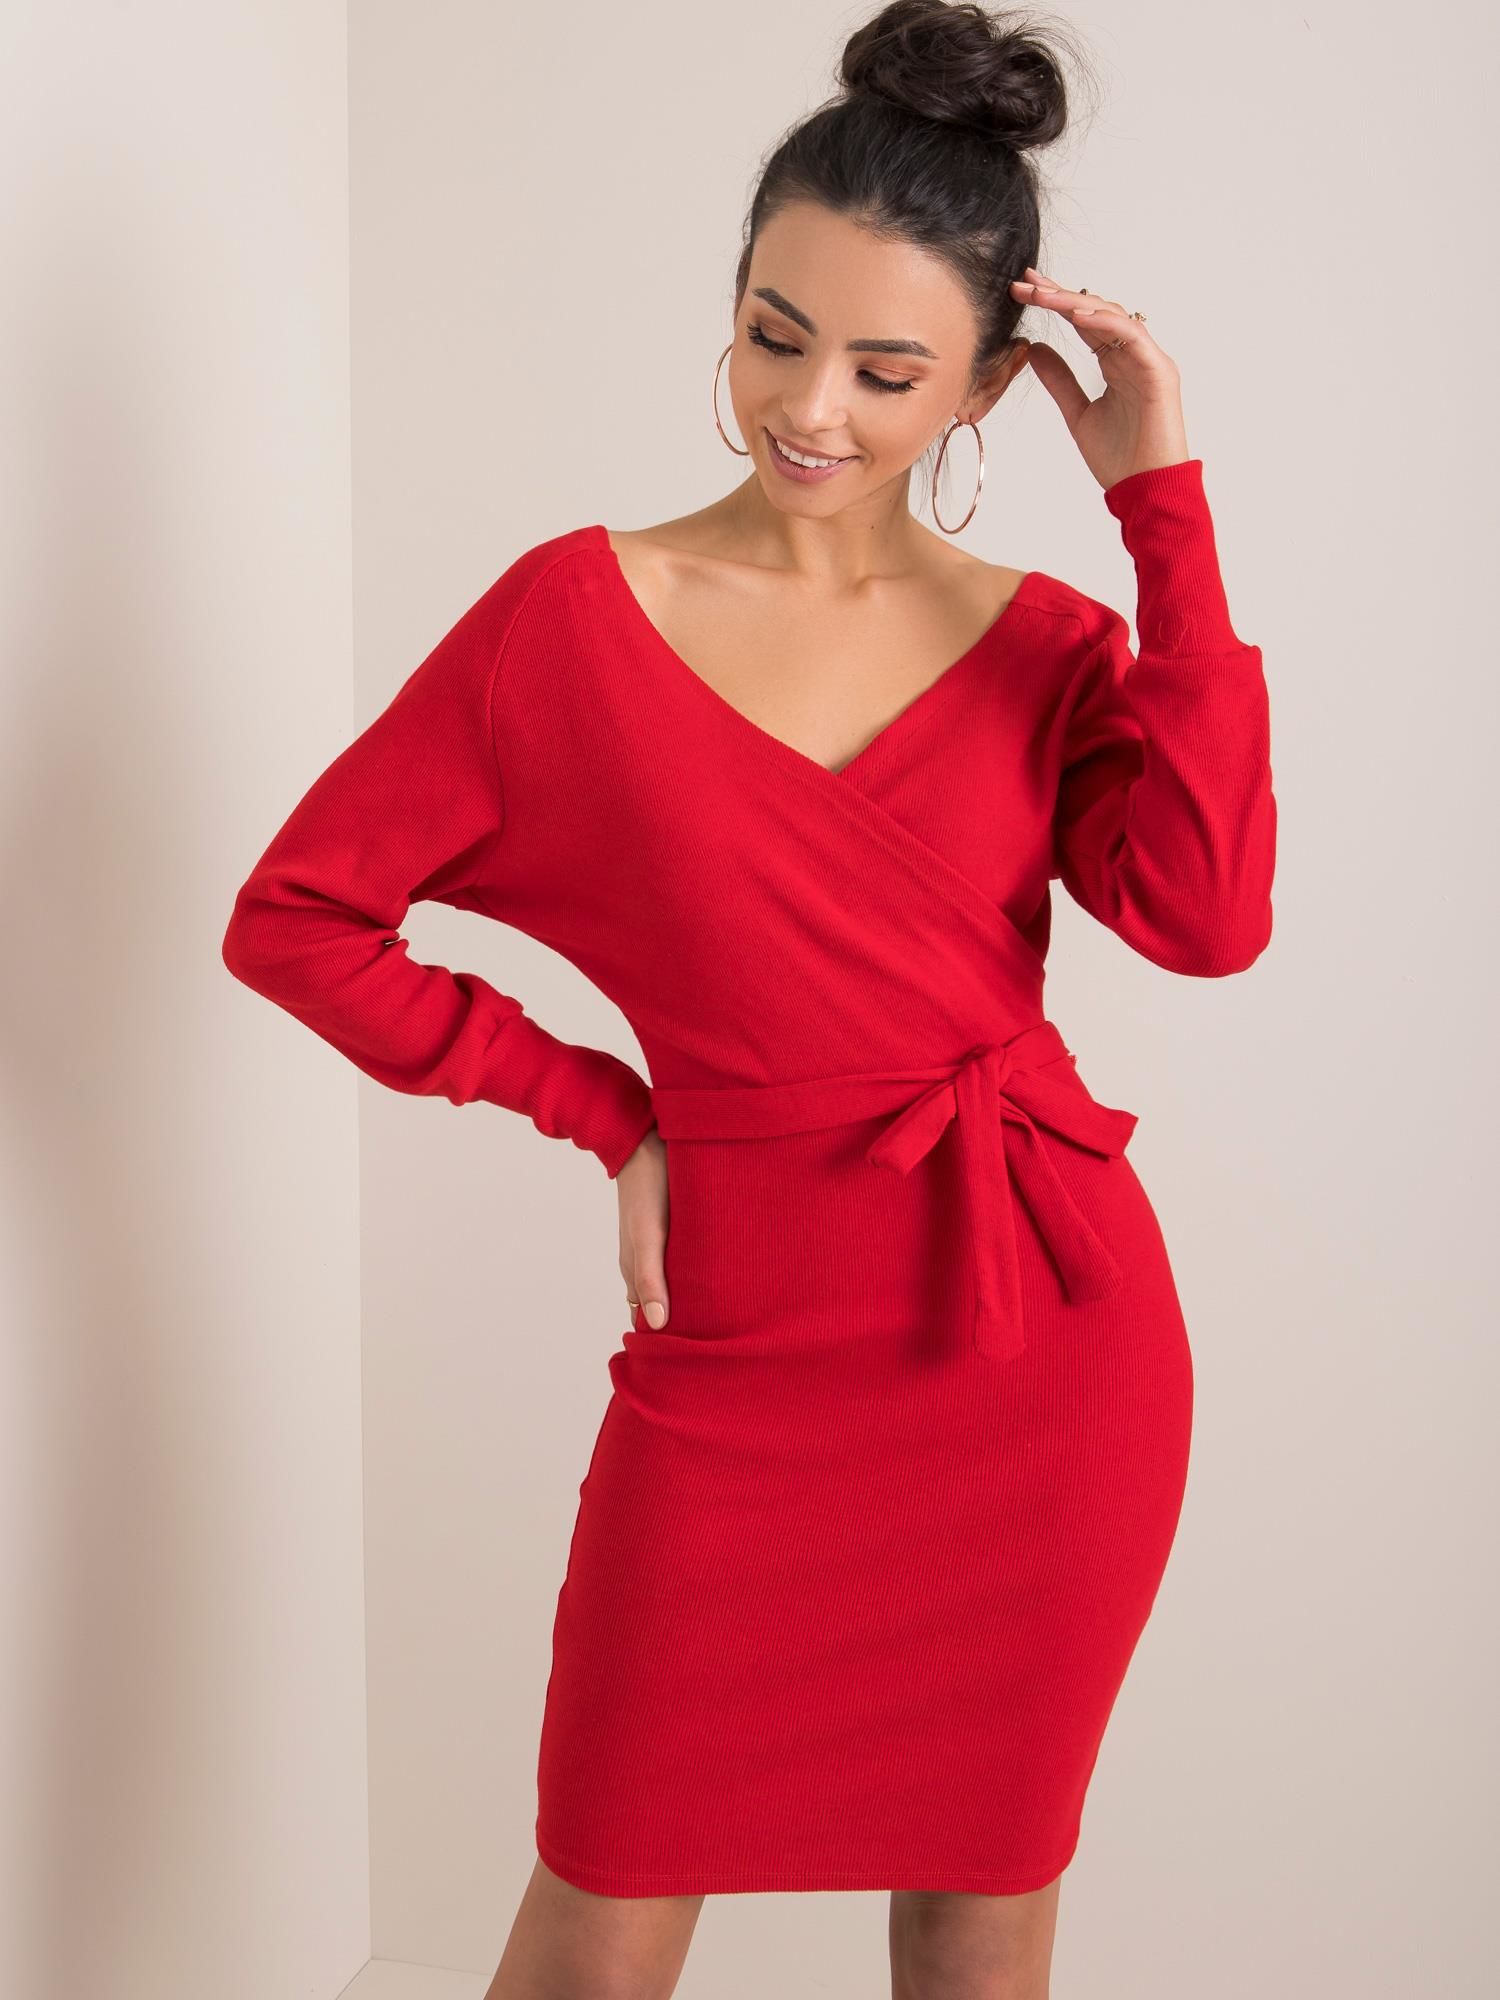 Dámské červené šaty s páskem RV-SK-5297.23P-red Velikost: S